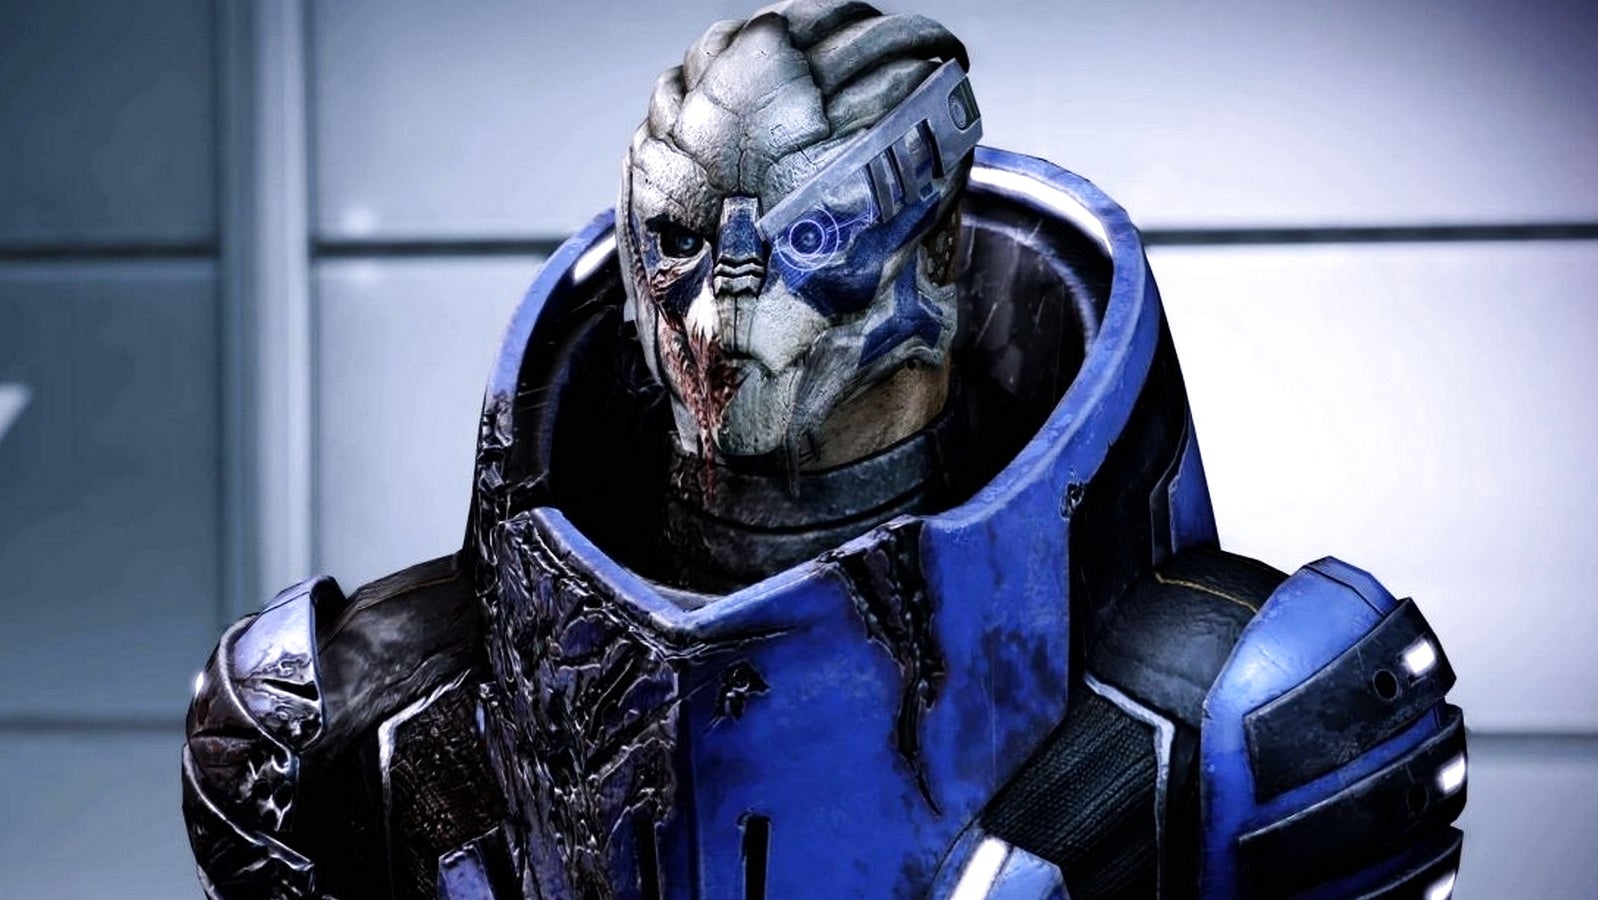 Bilder zu Mass Effect: Garrus: Dr. Saleon finden, Tali und die Geth, Wrex: Familienrüstung